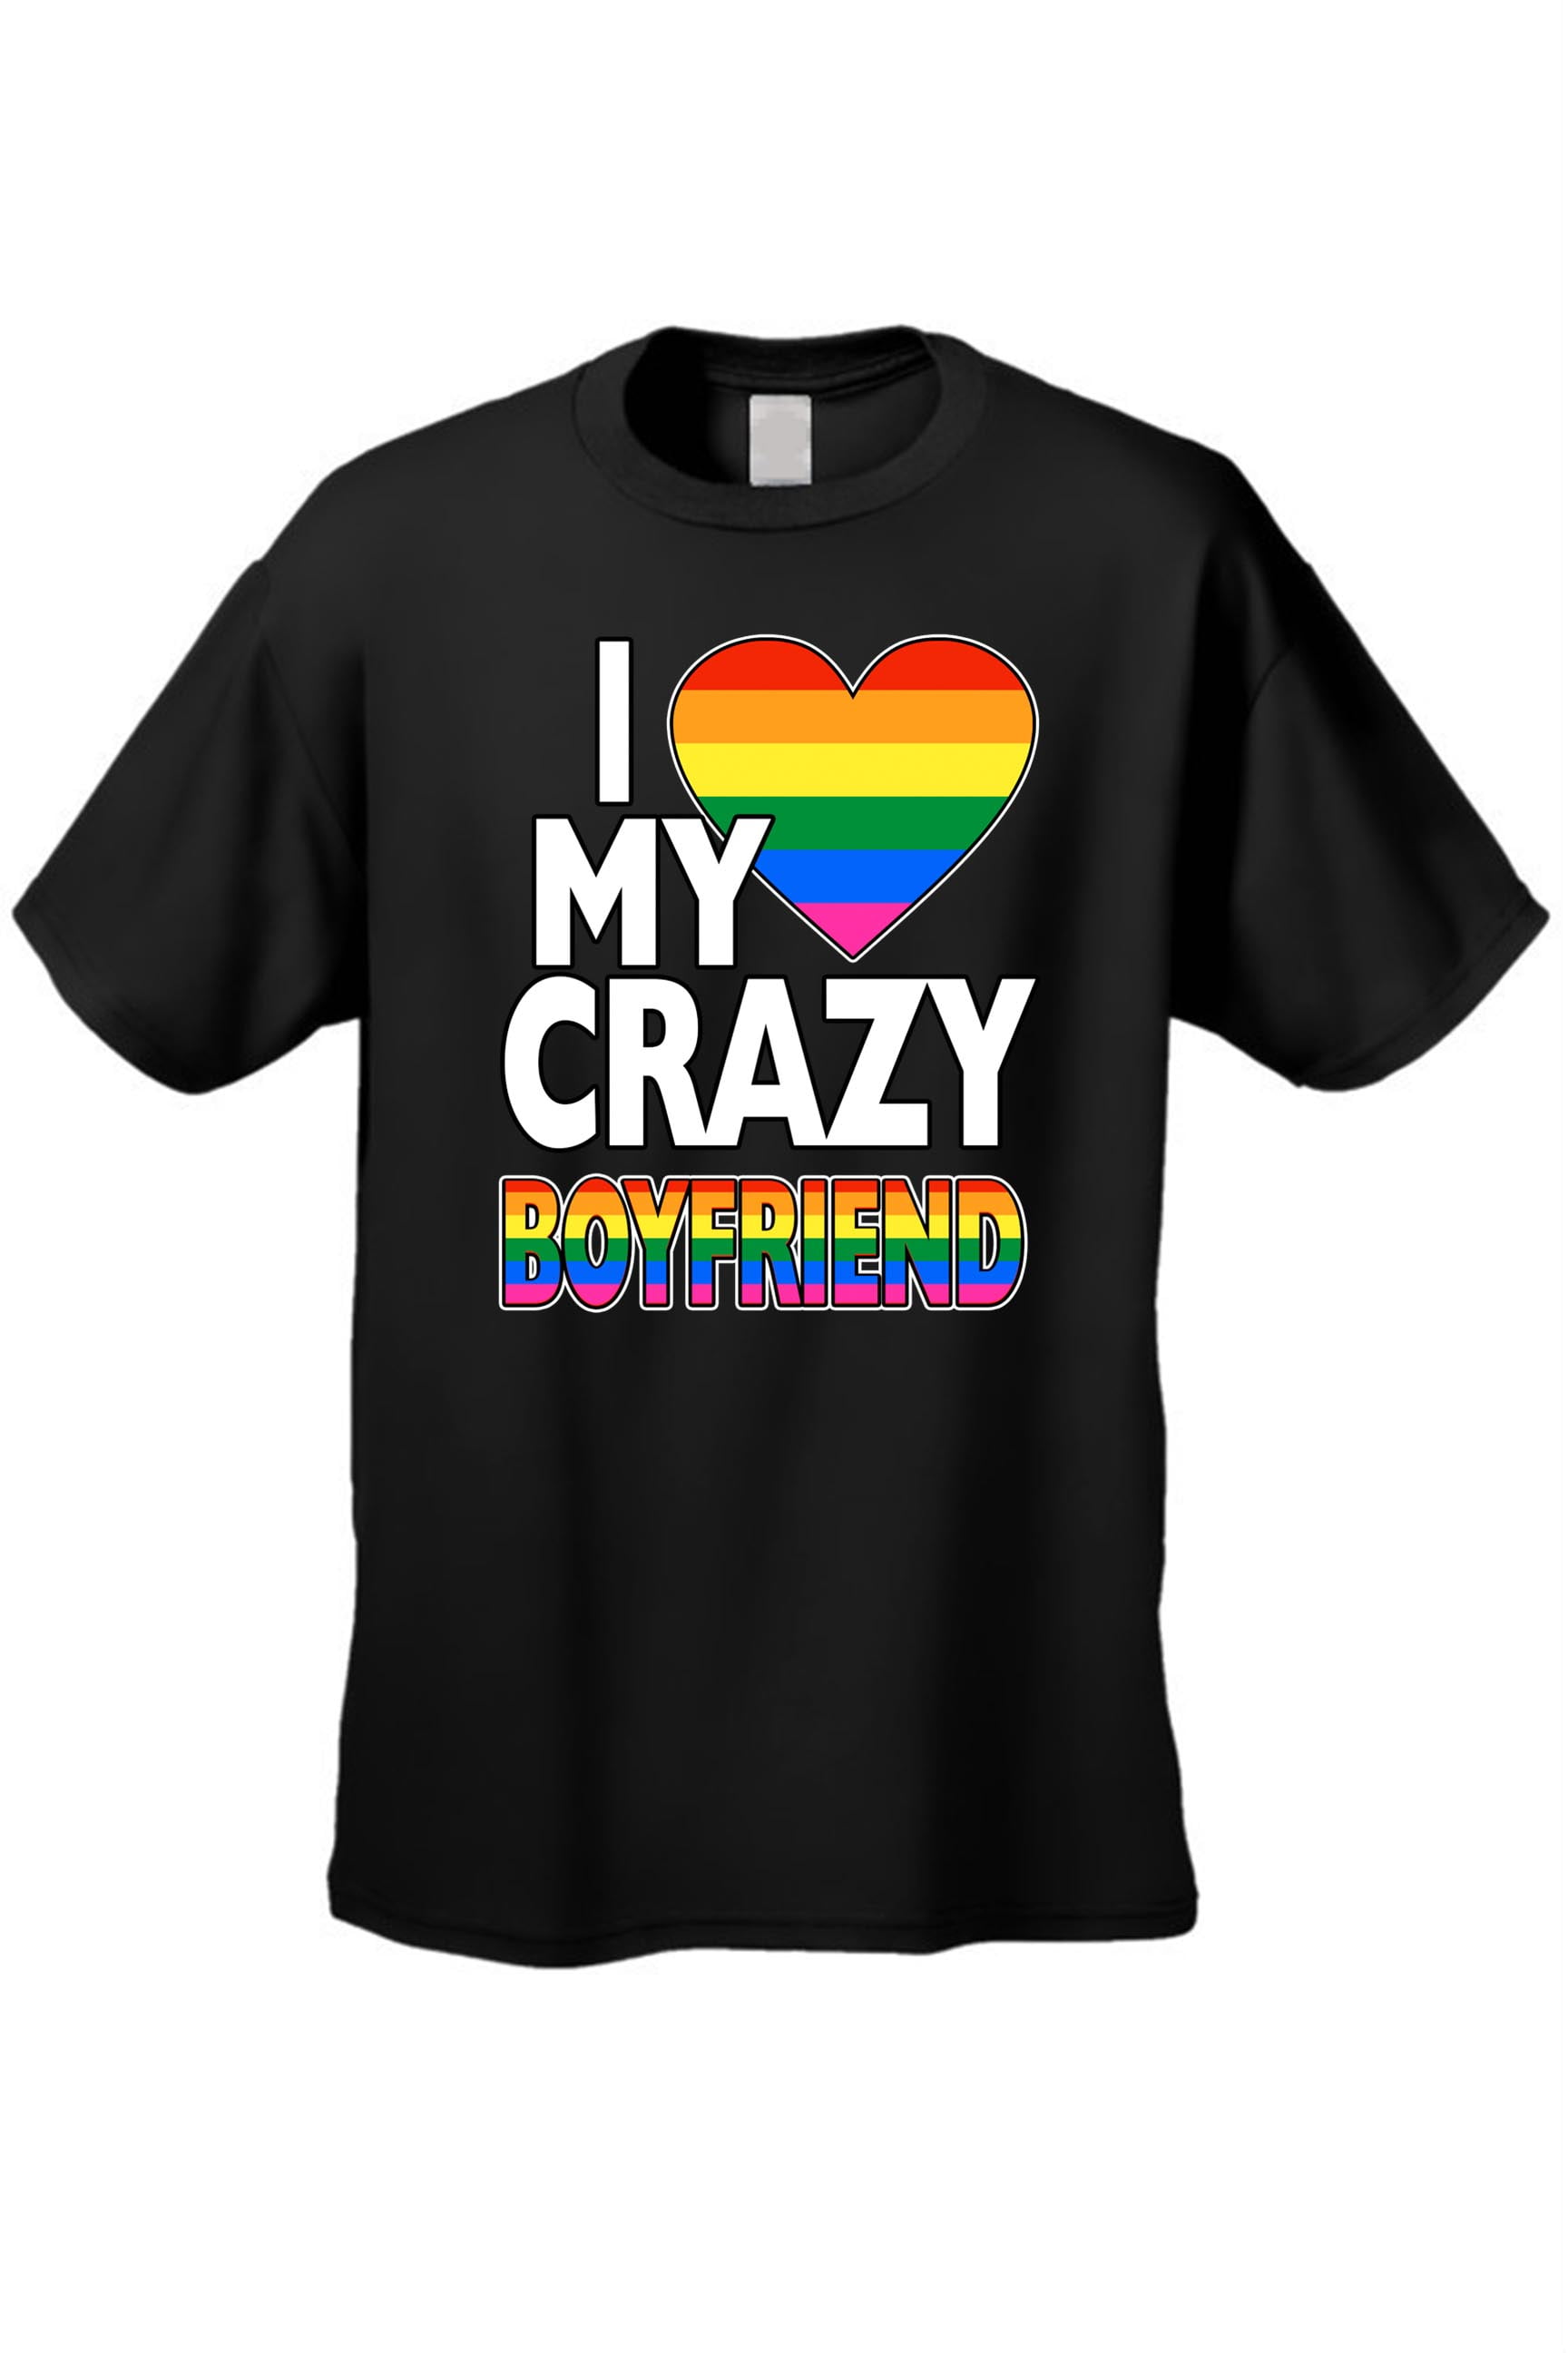 walmart gay pride logo